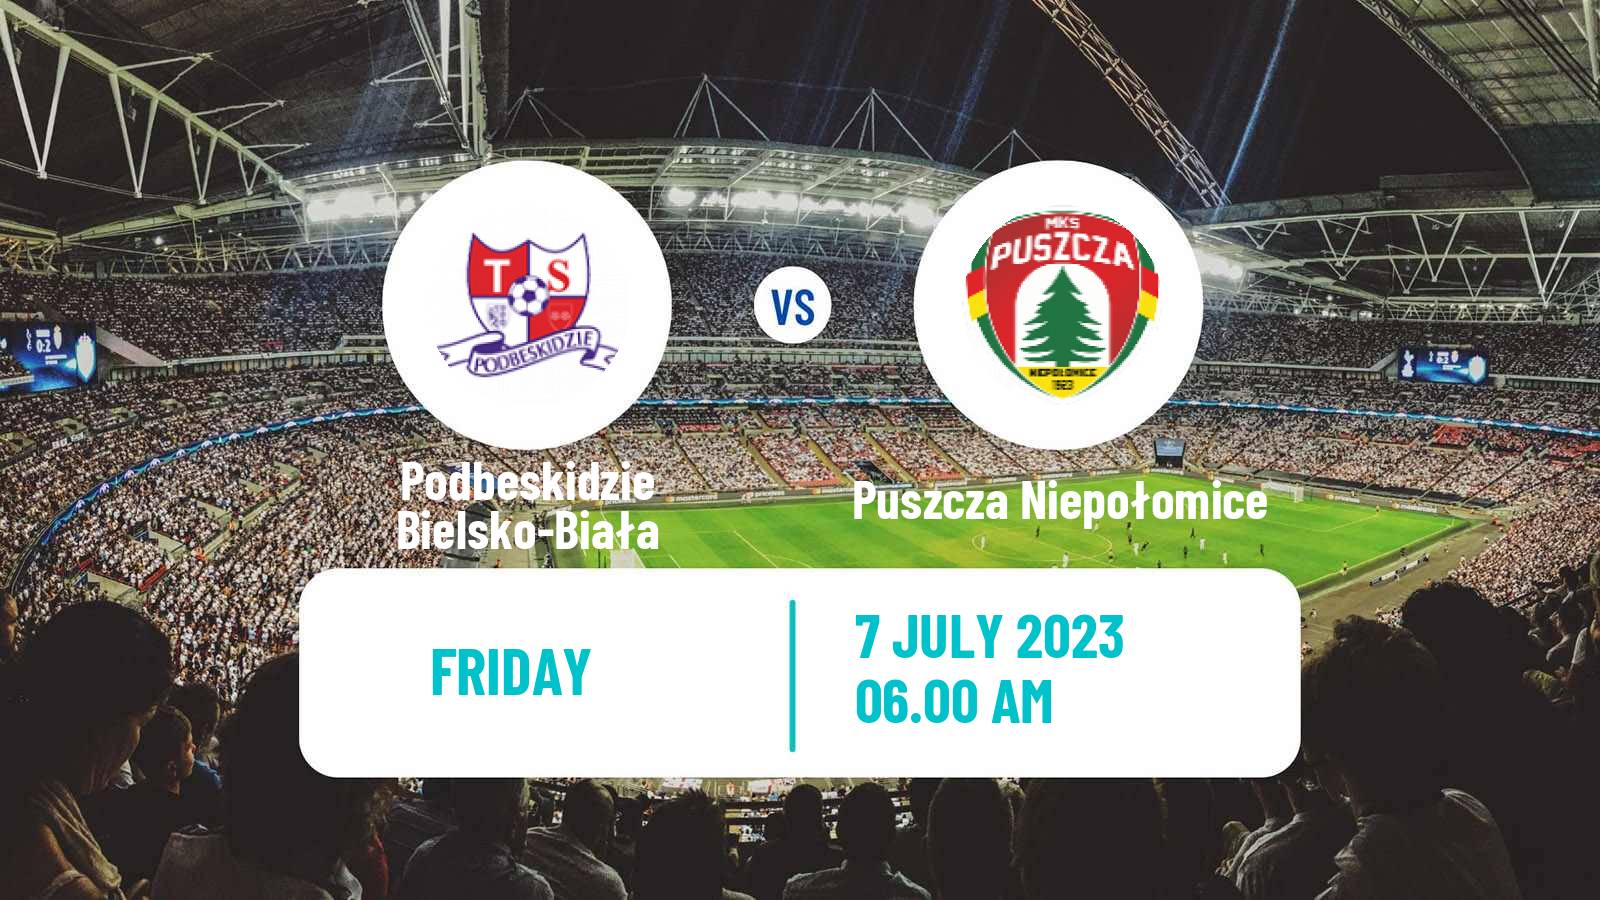 Soccer Club Friendly Podbeskidzie Bielsko-Biała - Puszcza Niepołomice